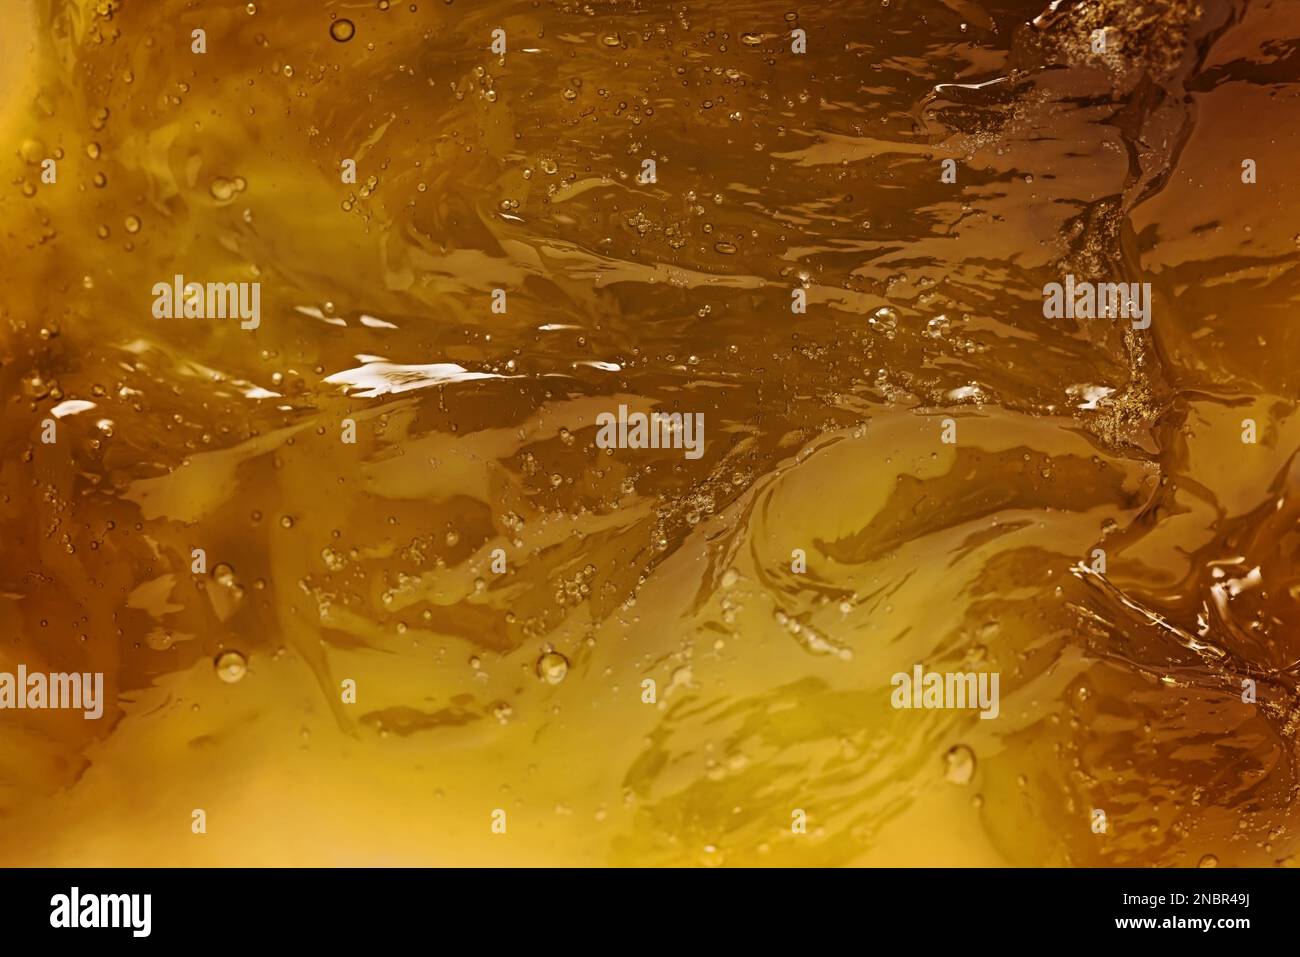 Gelb-transparente Textur des kosmetischen mittels isoliert auf weißem Hintergrund. Flüssige gelbe Zuckerpaste oder Wachs zur Nahaufnahme der Enthaarung. Stockfoto